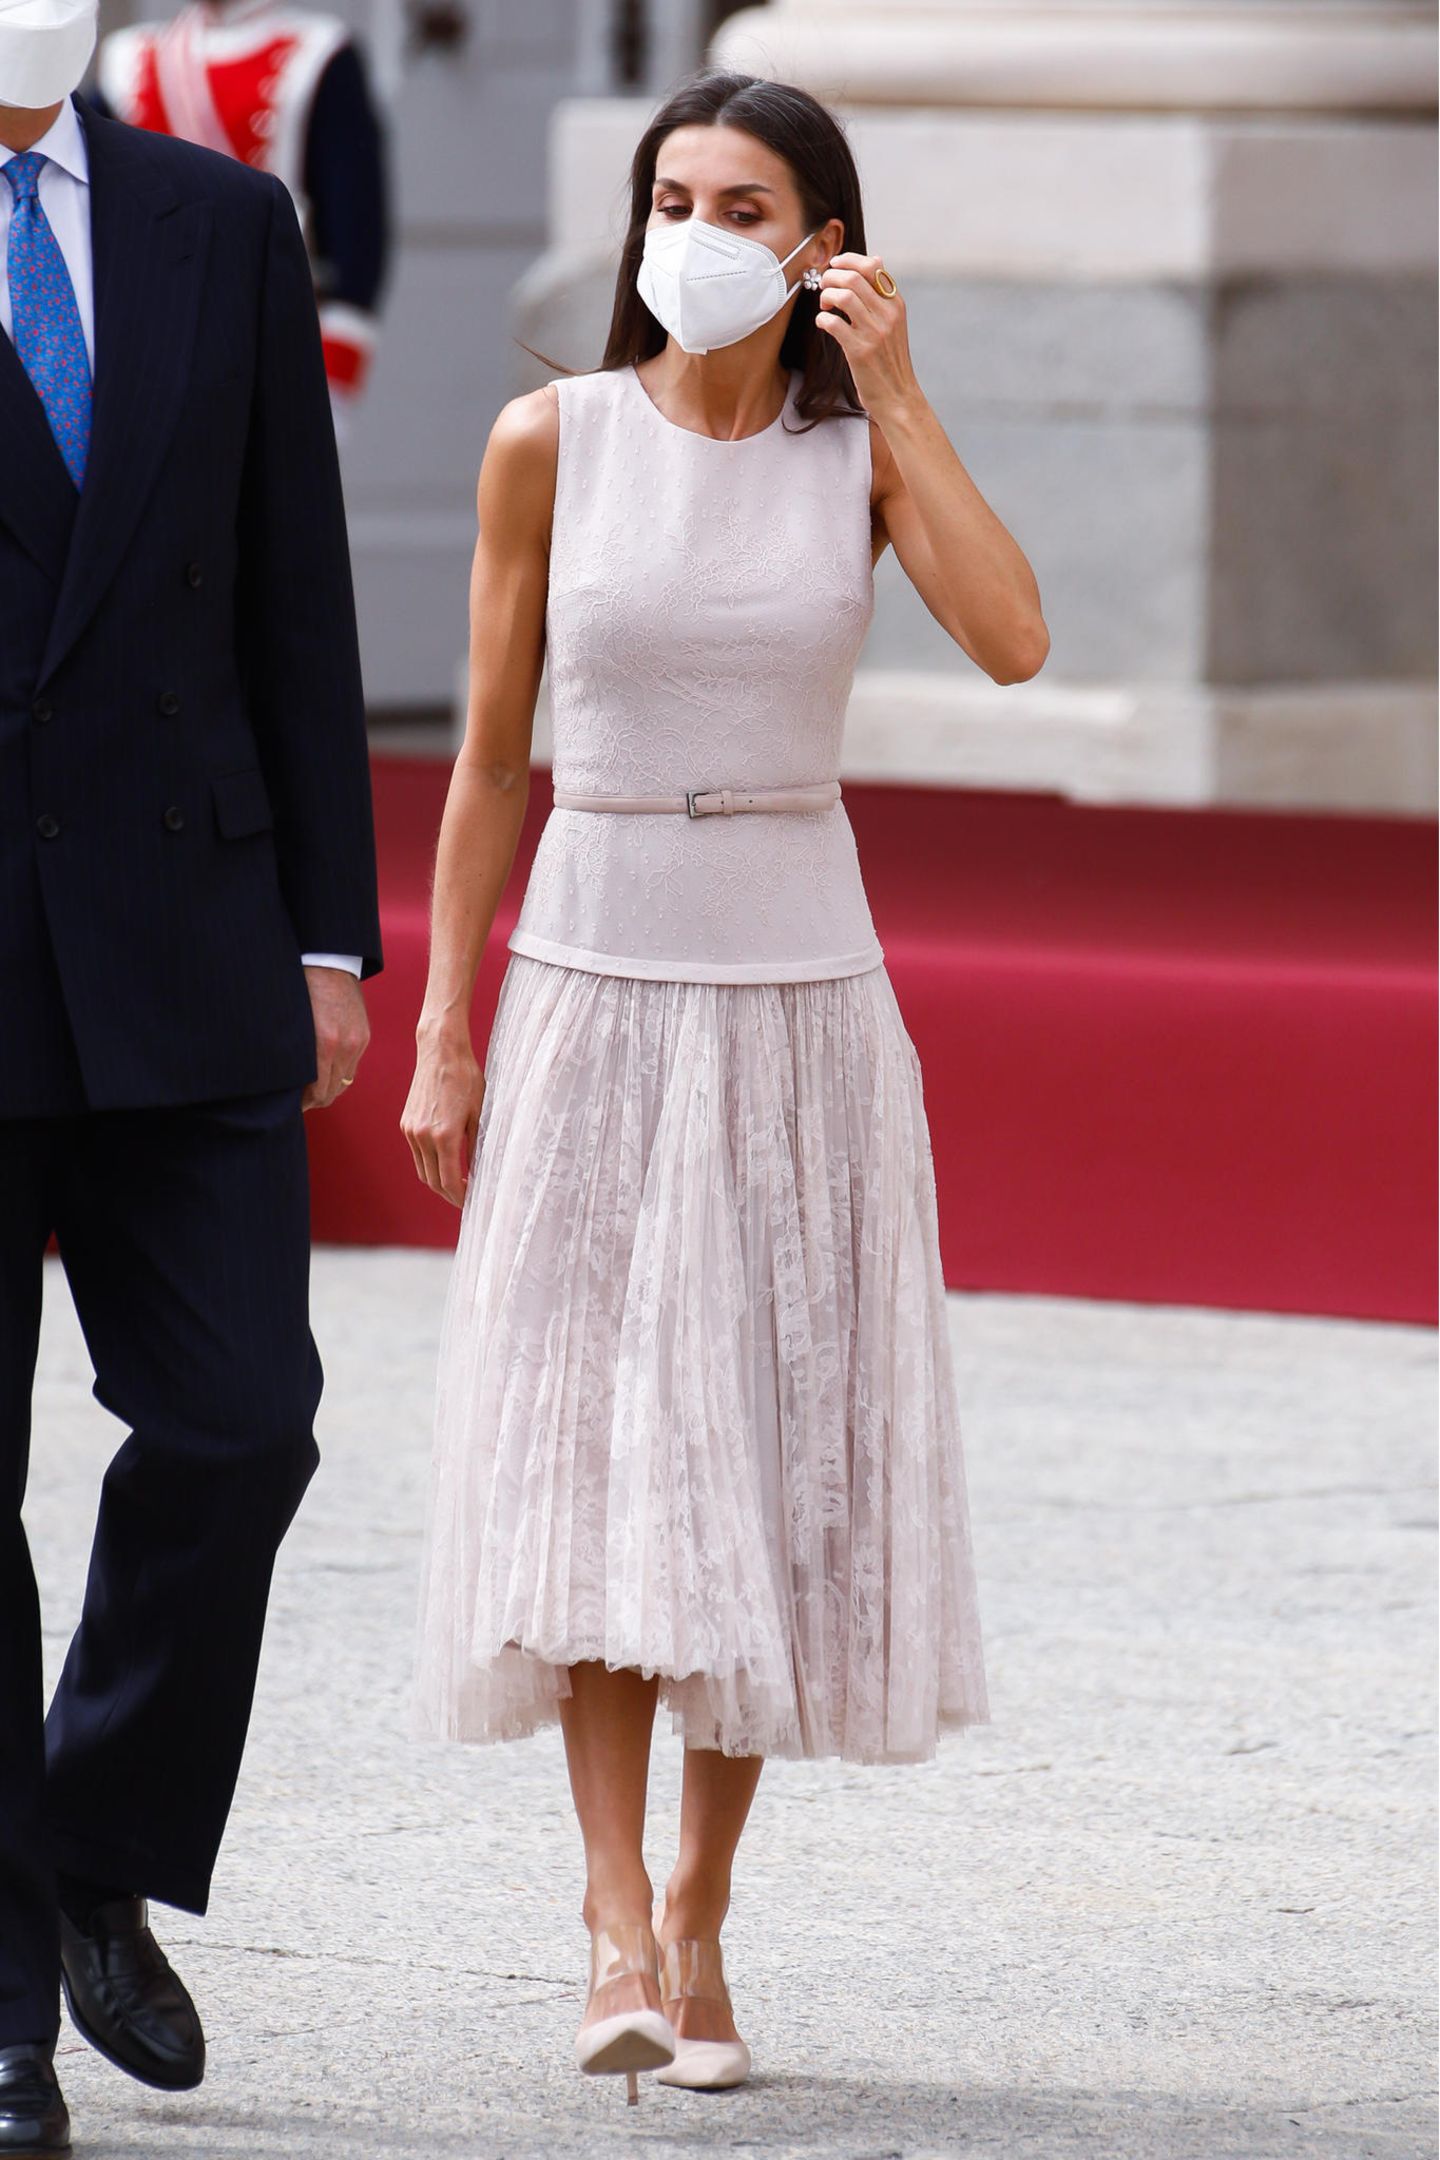 Königin Letizia zeigt sich bei der Begrüßung des Staatsbesuches aus Korea in einem edlen Look in zartem Rosa. Für den ersten Auftritt des Tages entscheidet sie sich für ein Kleid mit Spitzenrock von Varela, das sie mit Pumps von Steve Madden und Ohrringen von Joyeria Yanes kombiniert.